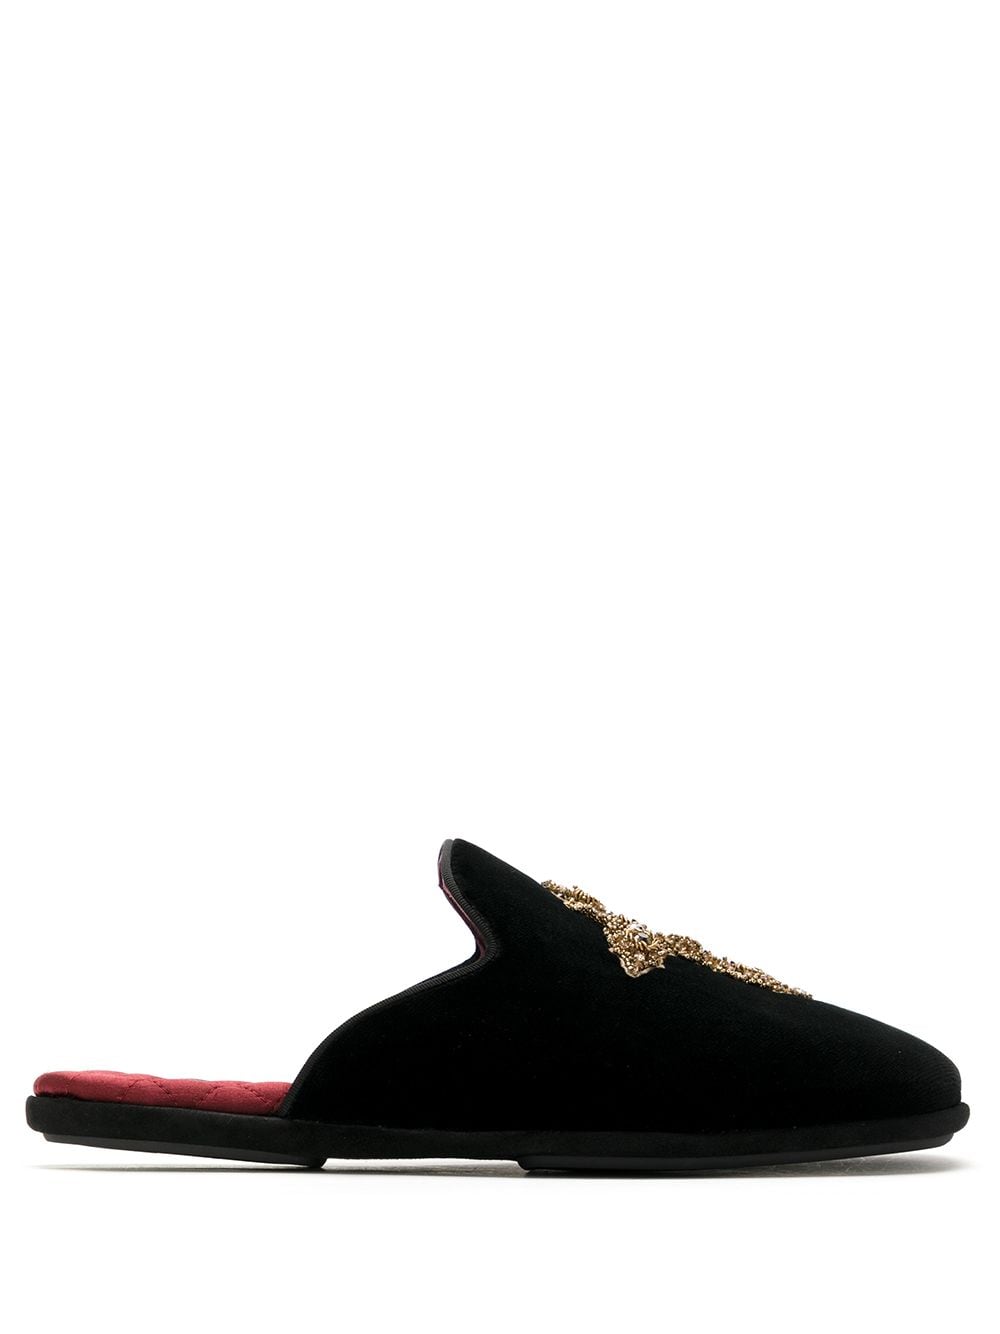 Dolce & Gabbana embroidered cross slippers - Black von Dolce & Gabbana